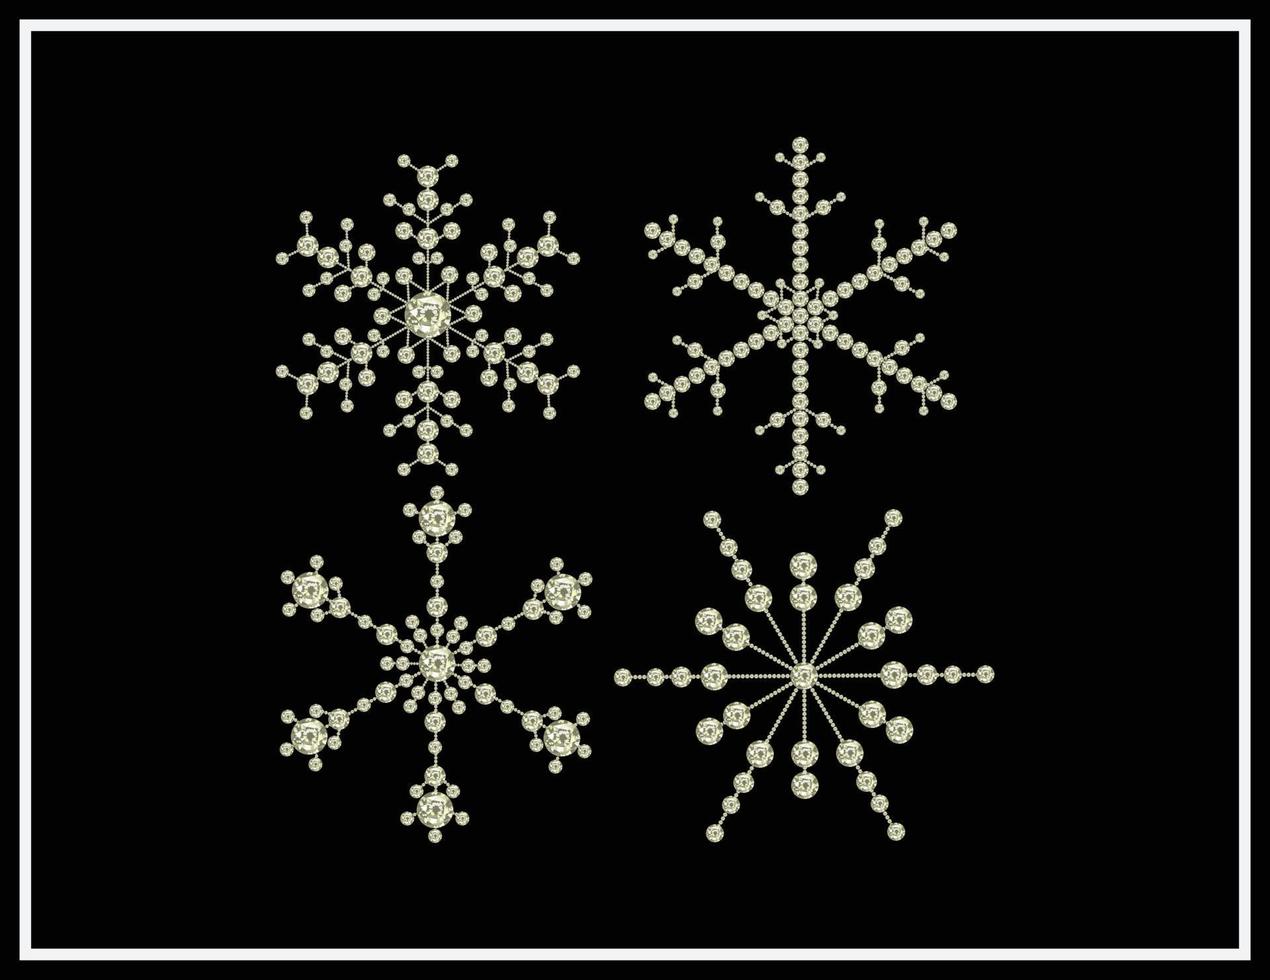 conjunto de vectores de copos de nieve hechos con diamantes de imitación de perlas y diamantes